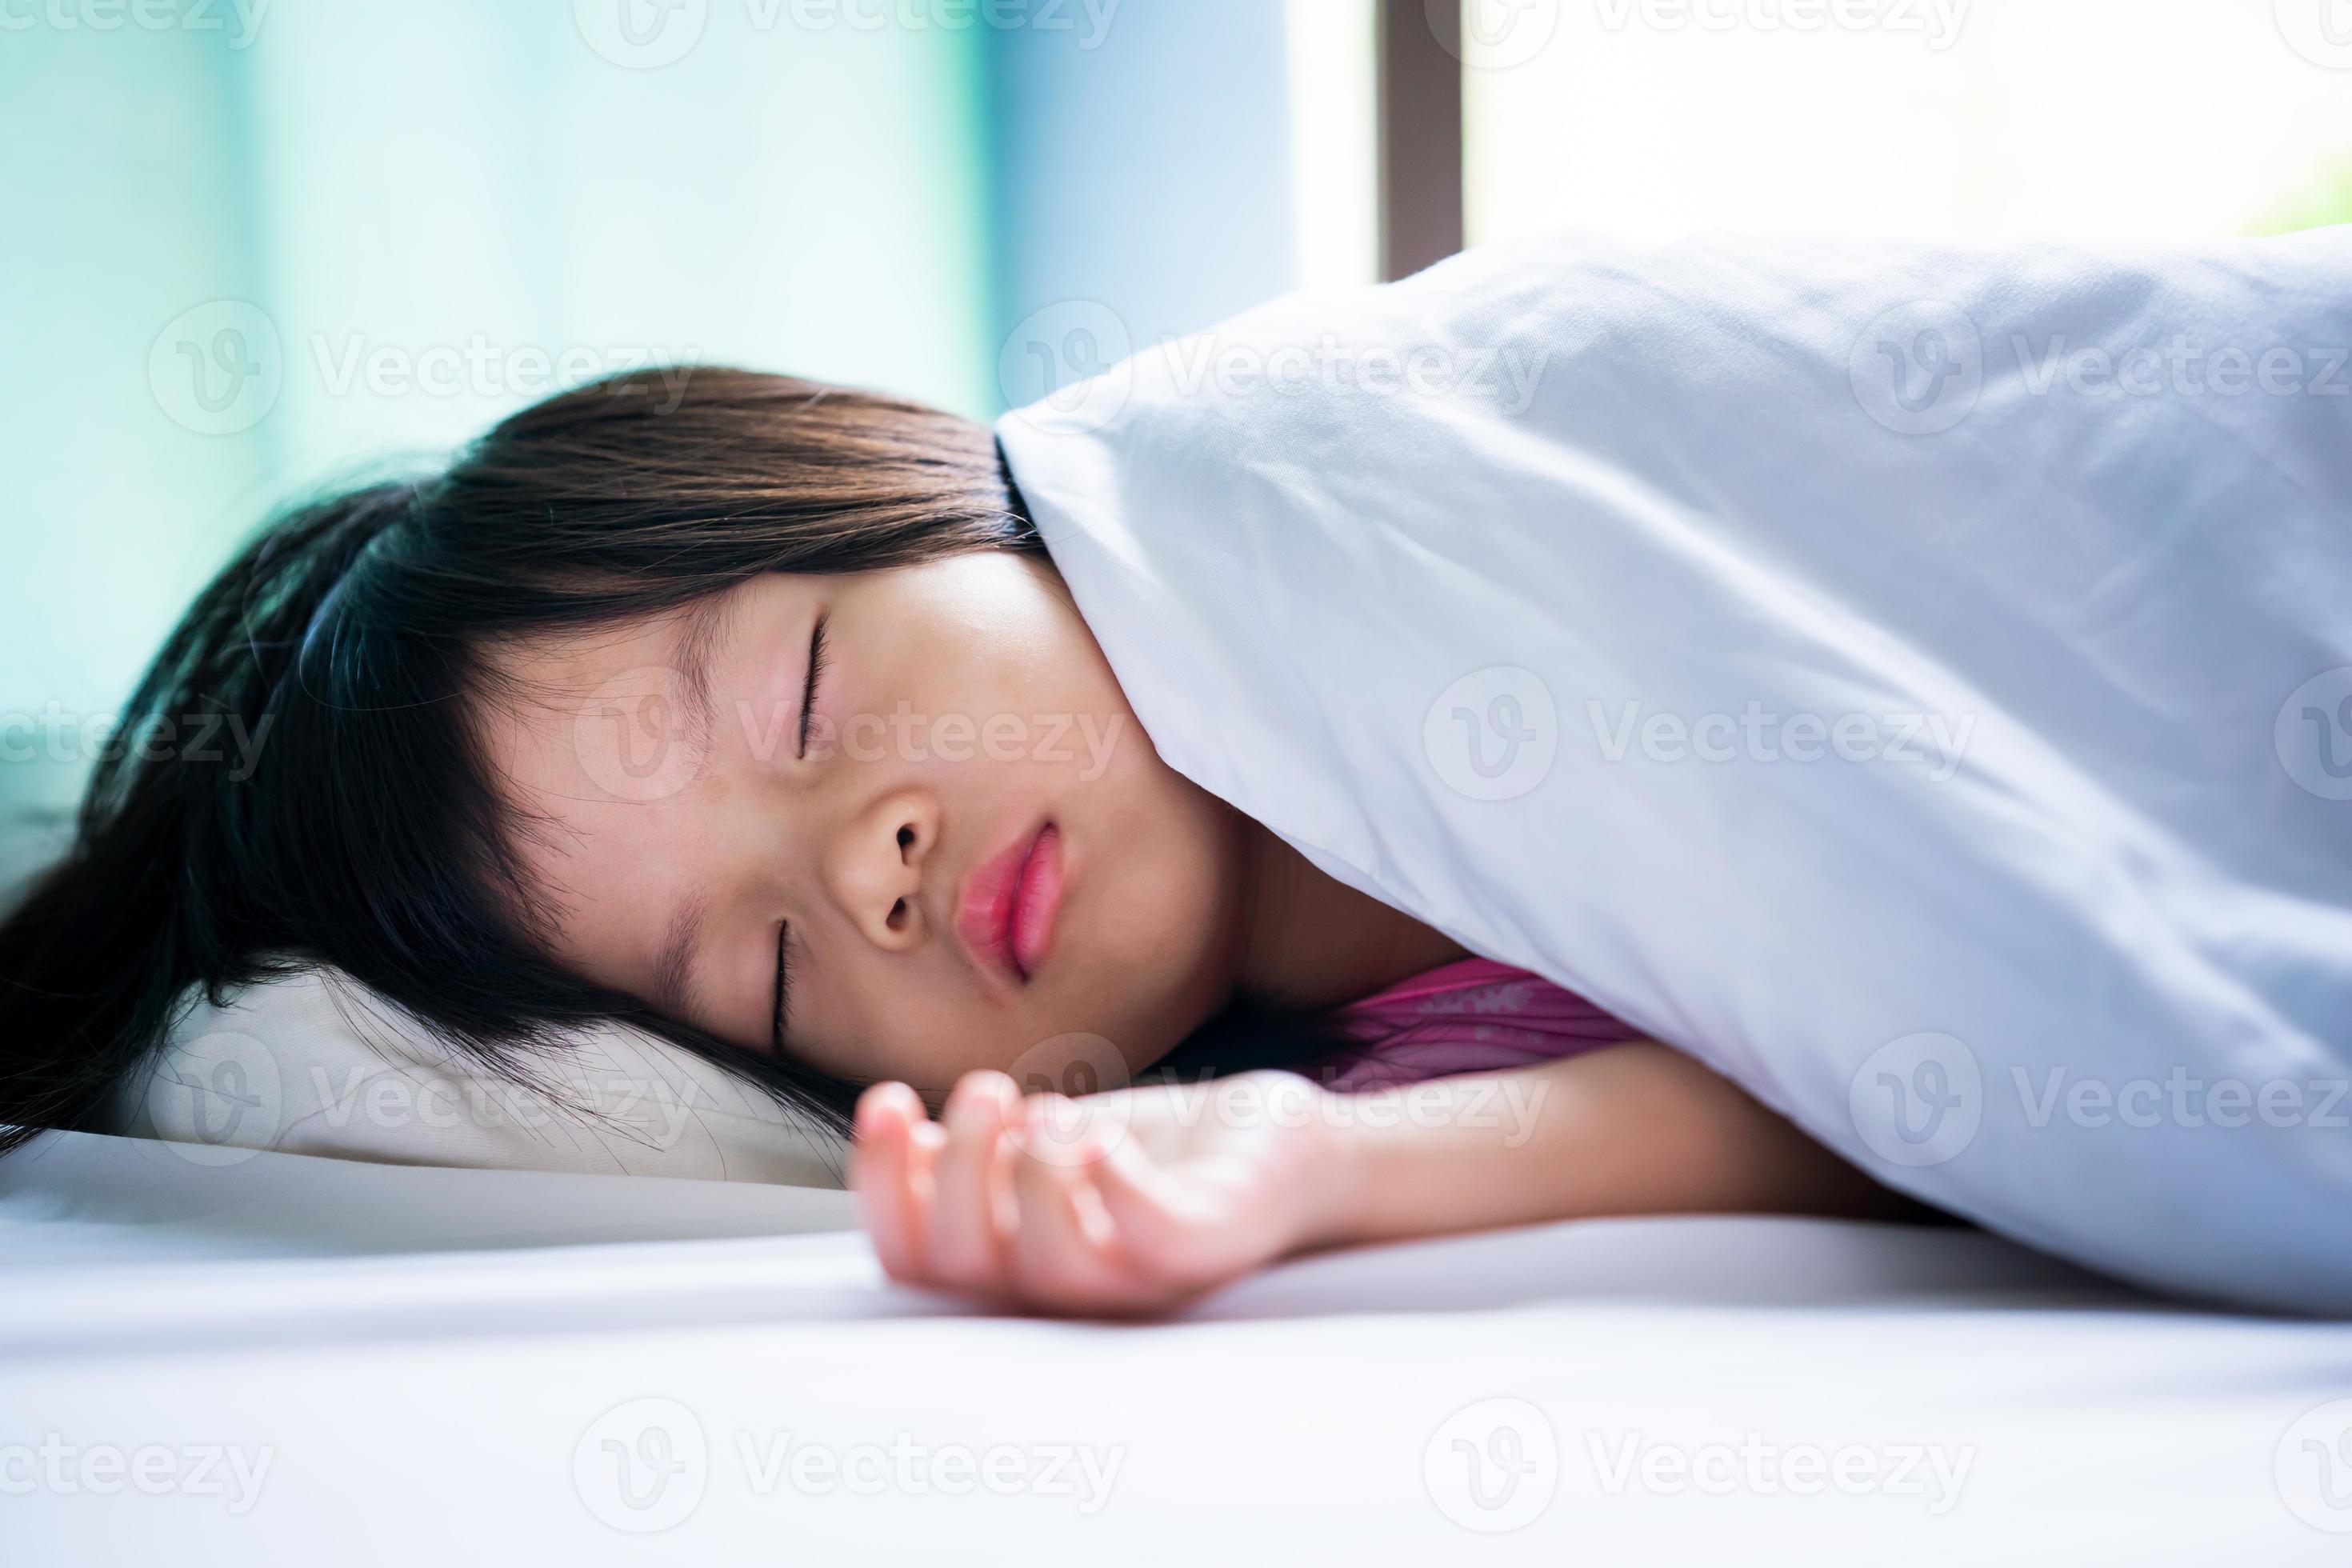 Numeriek robot Oprechtheid portret van Aziatische mooi meisje slapen in wit bed. baby slapen in deken.  kind van 4-5 jaar. 4225880 stockfoto bij Vecteezy